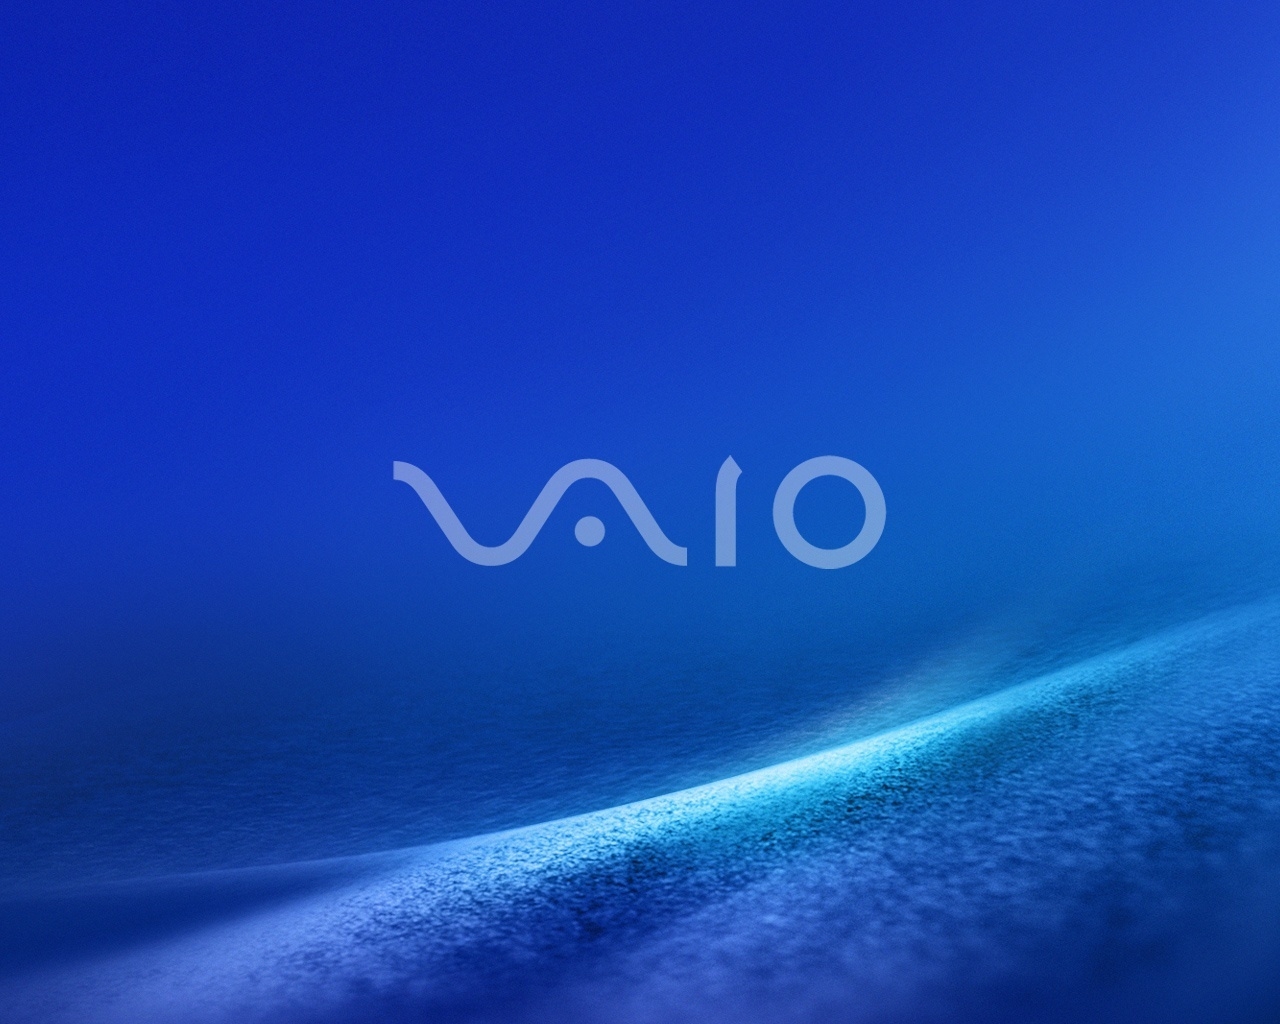 Vaio Dark Blue for 1280 x 1024 resolution